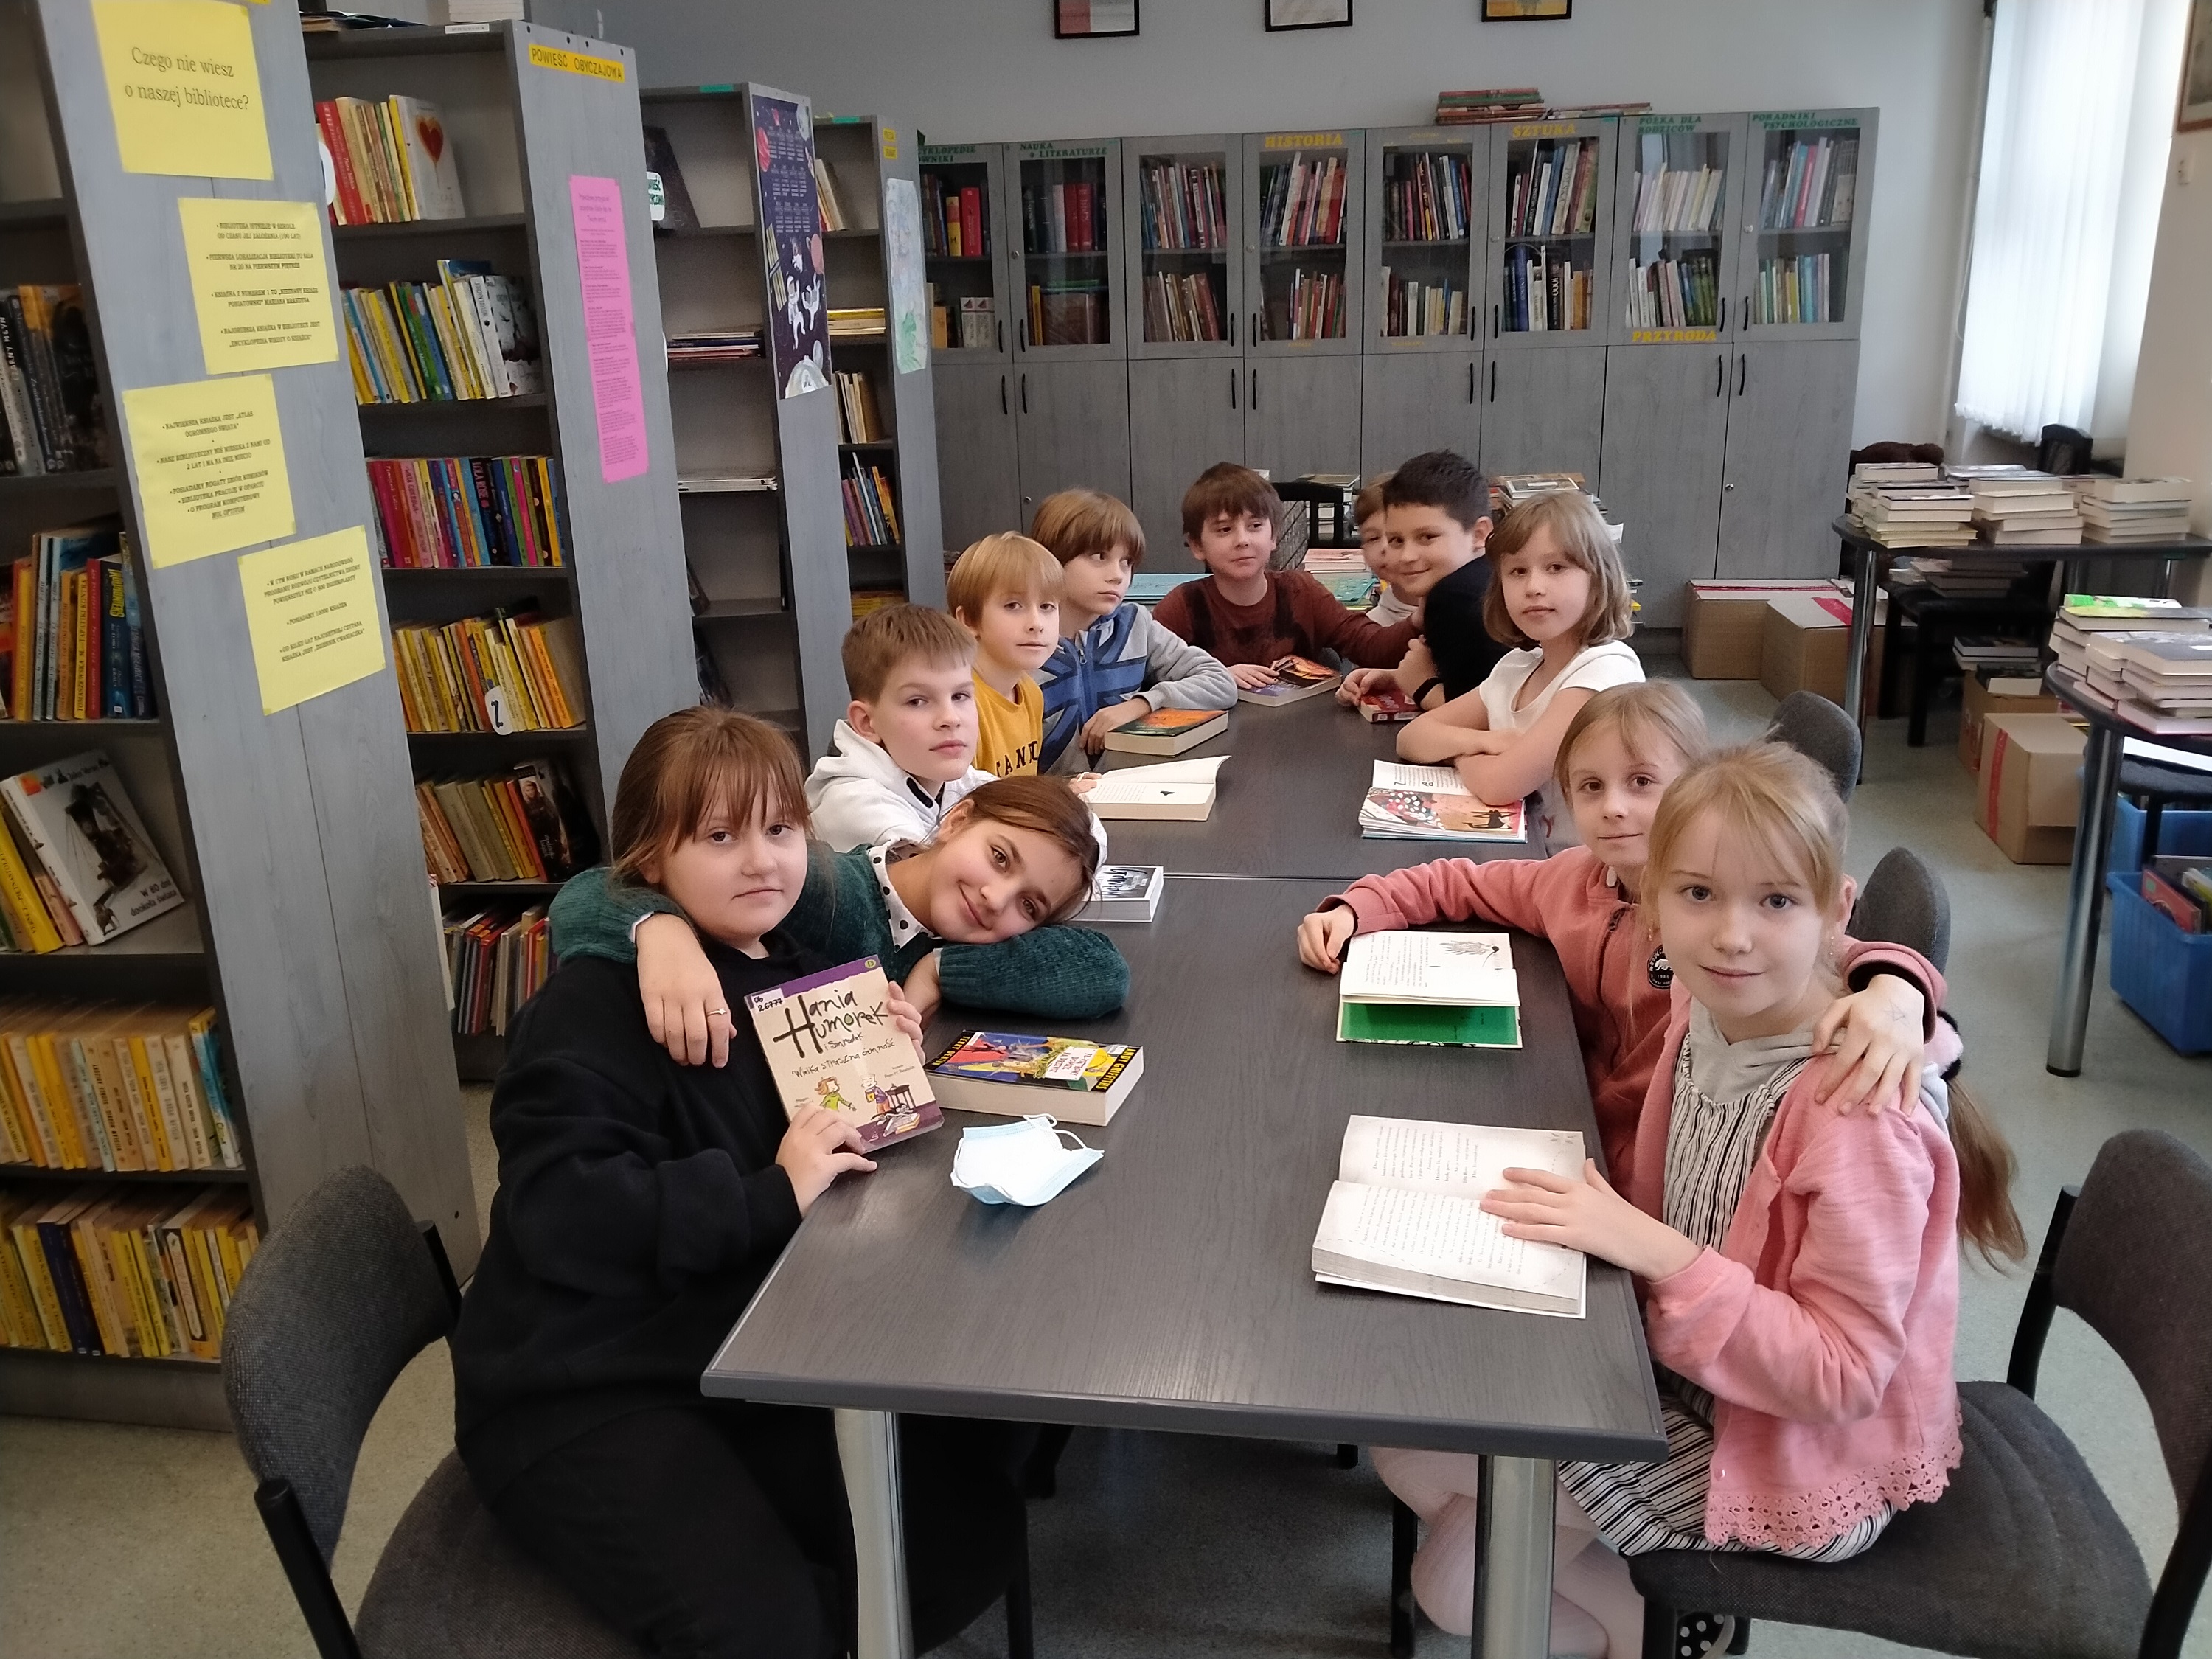 Grupa dzieci: pięć dziewczynek i 6 chłopców siedzi wokół dużego stołu w bibliotece szkolnej. Przed każdym z uczniów na stole leży otwarta książka. Dzieci patrzą w obiektyw. W tle znajdują się regały z książkami.